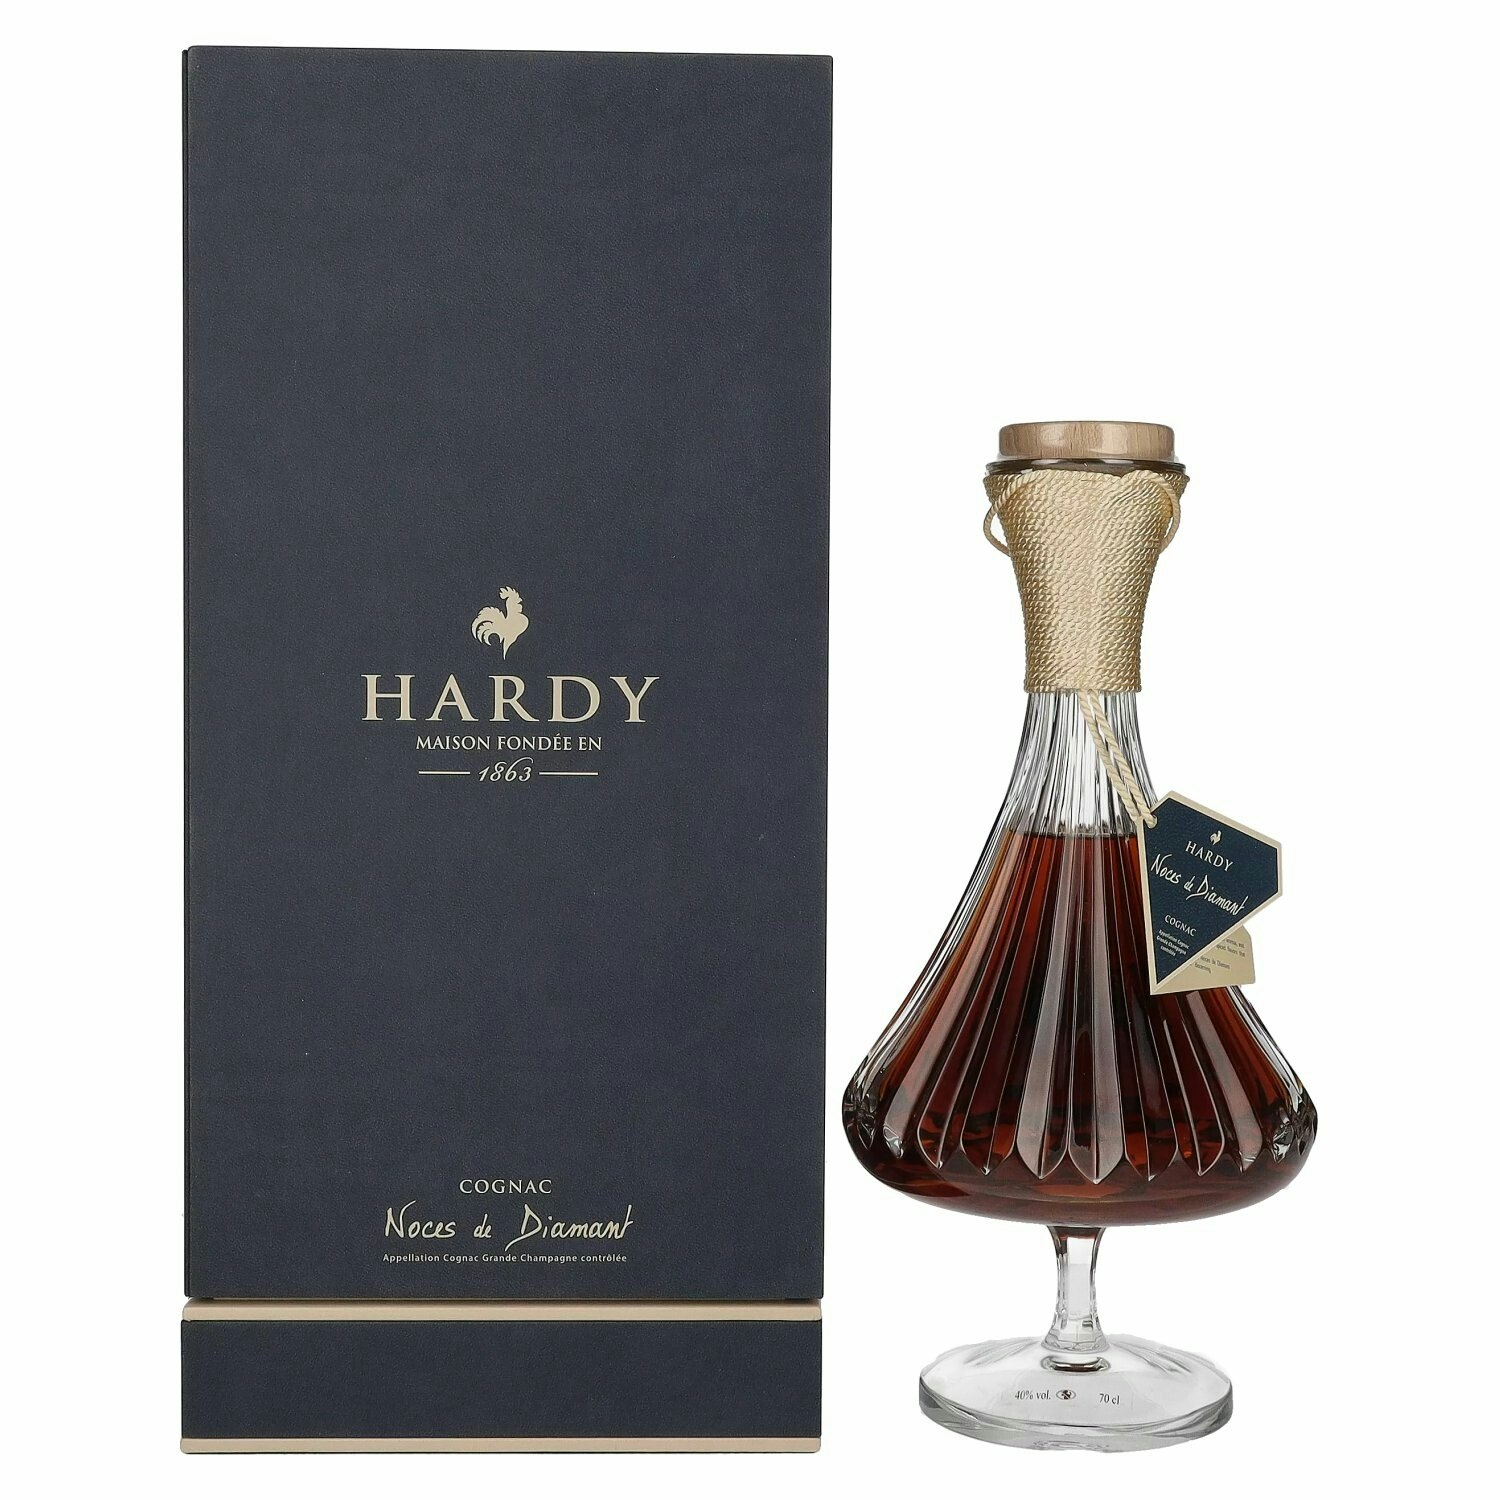 Hardy Cognac Noces de Diamant 40% Vol. 0,7l in Giftbox